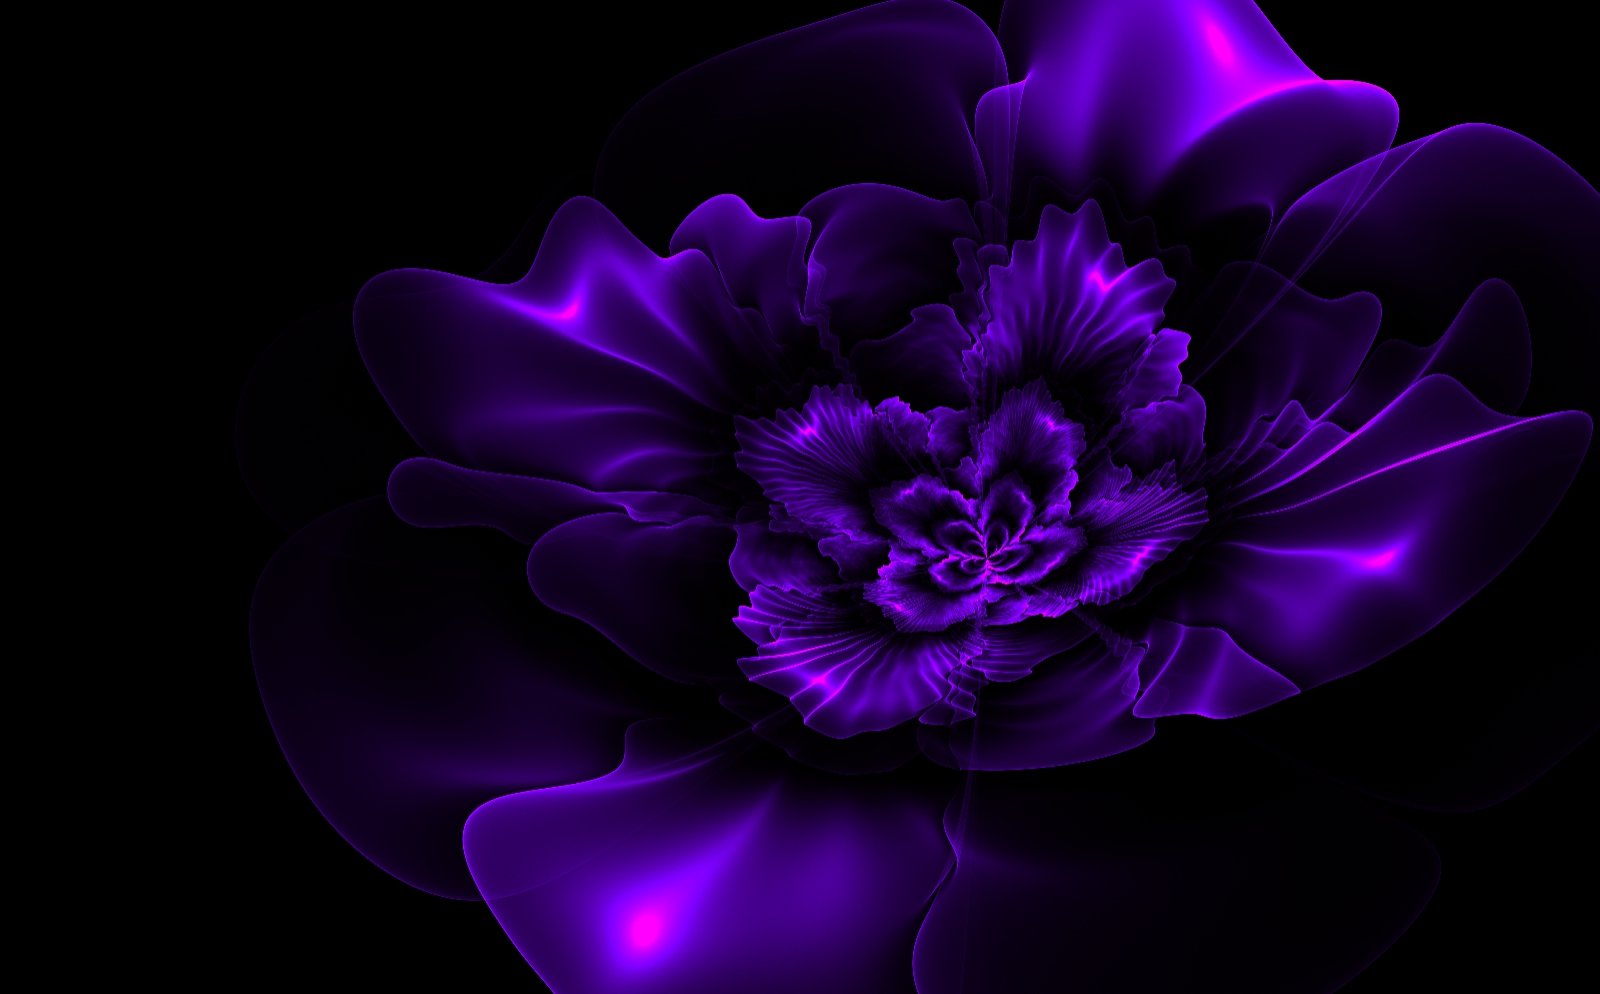 Dark Purple And Black Background Dark purple fractal flower